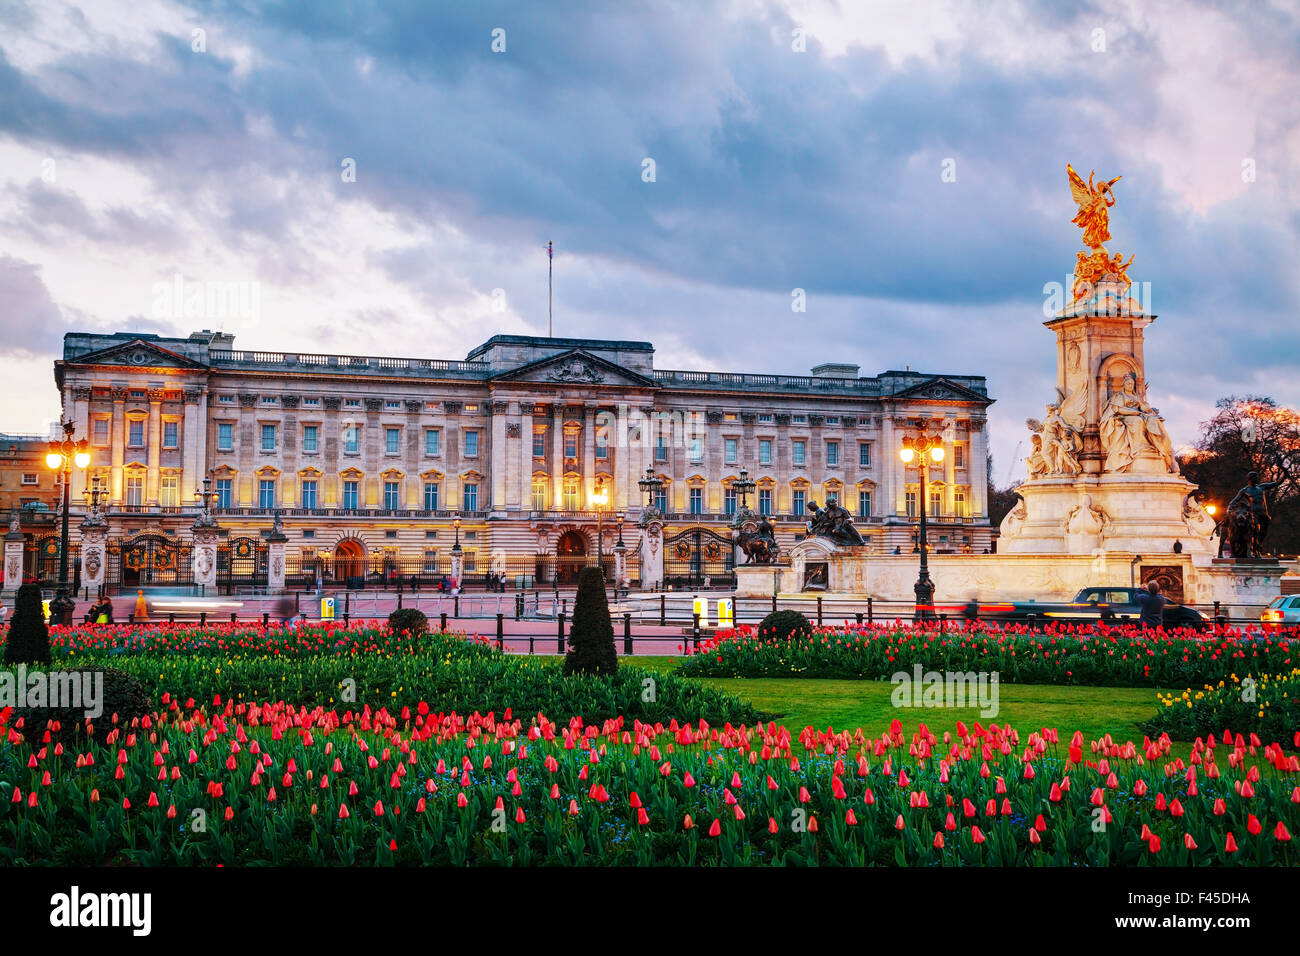 Le palais de Buckingham à Londres, Grande-Bretagne Banque D'Images